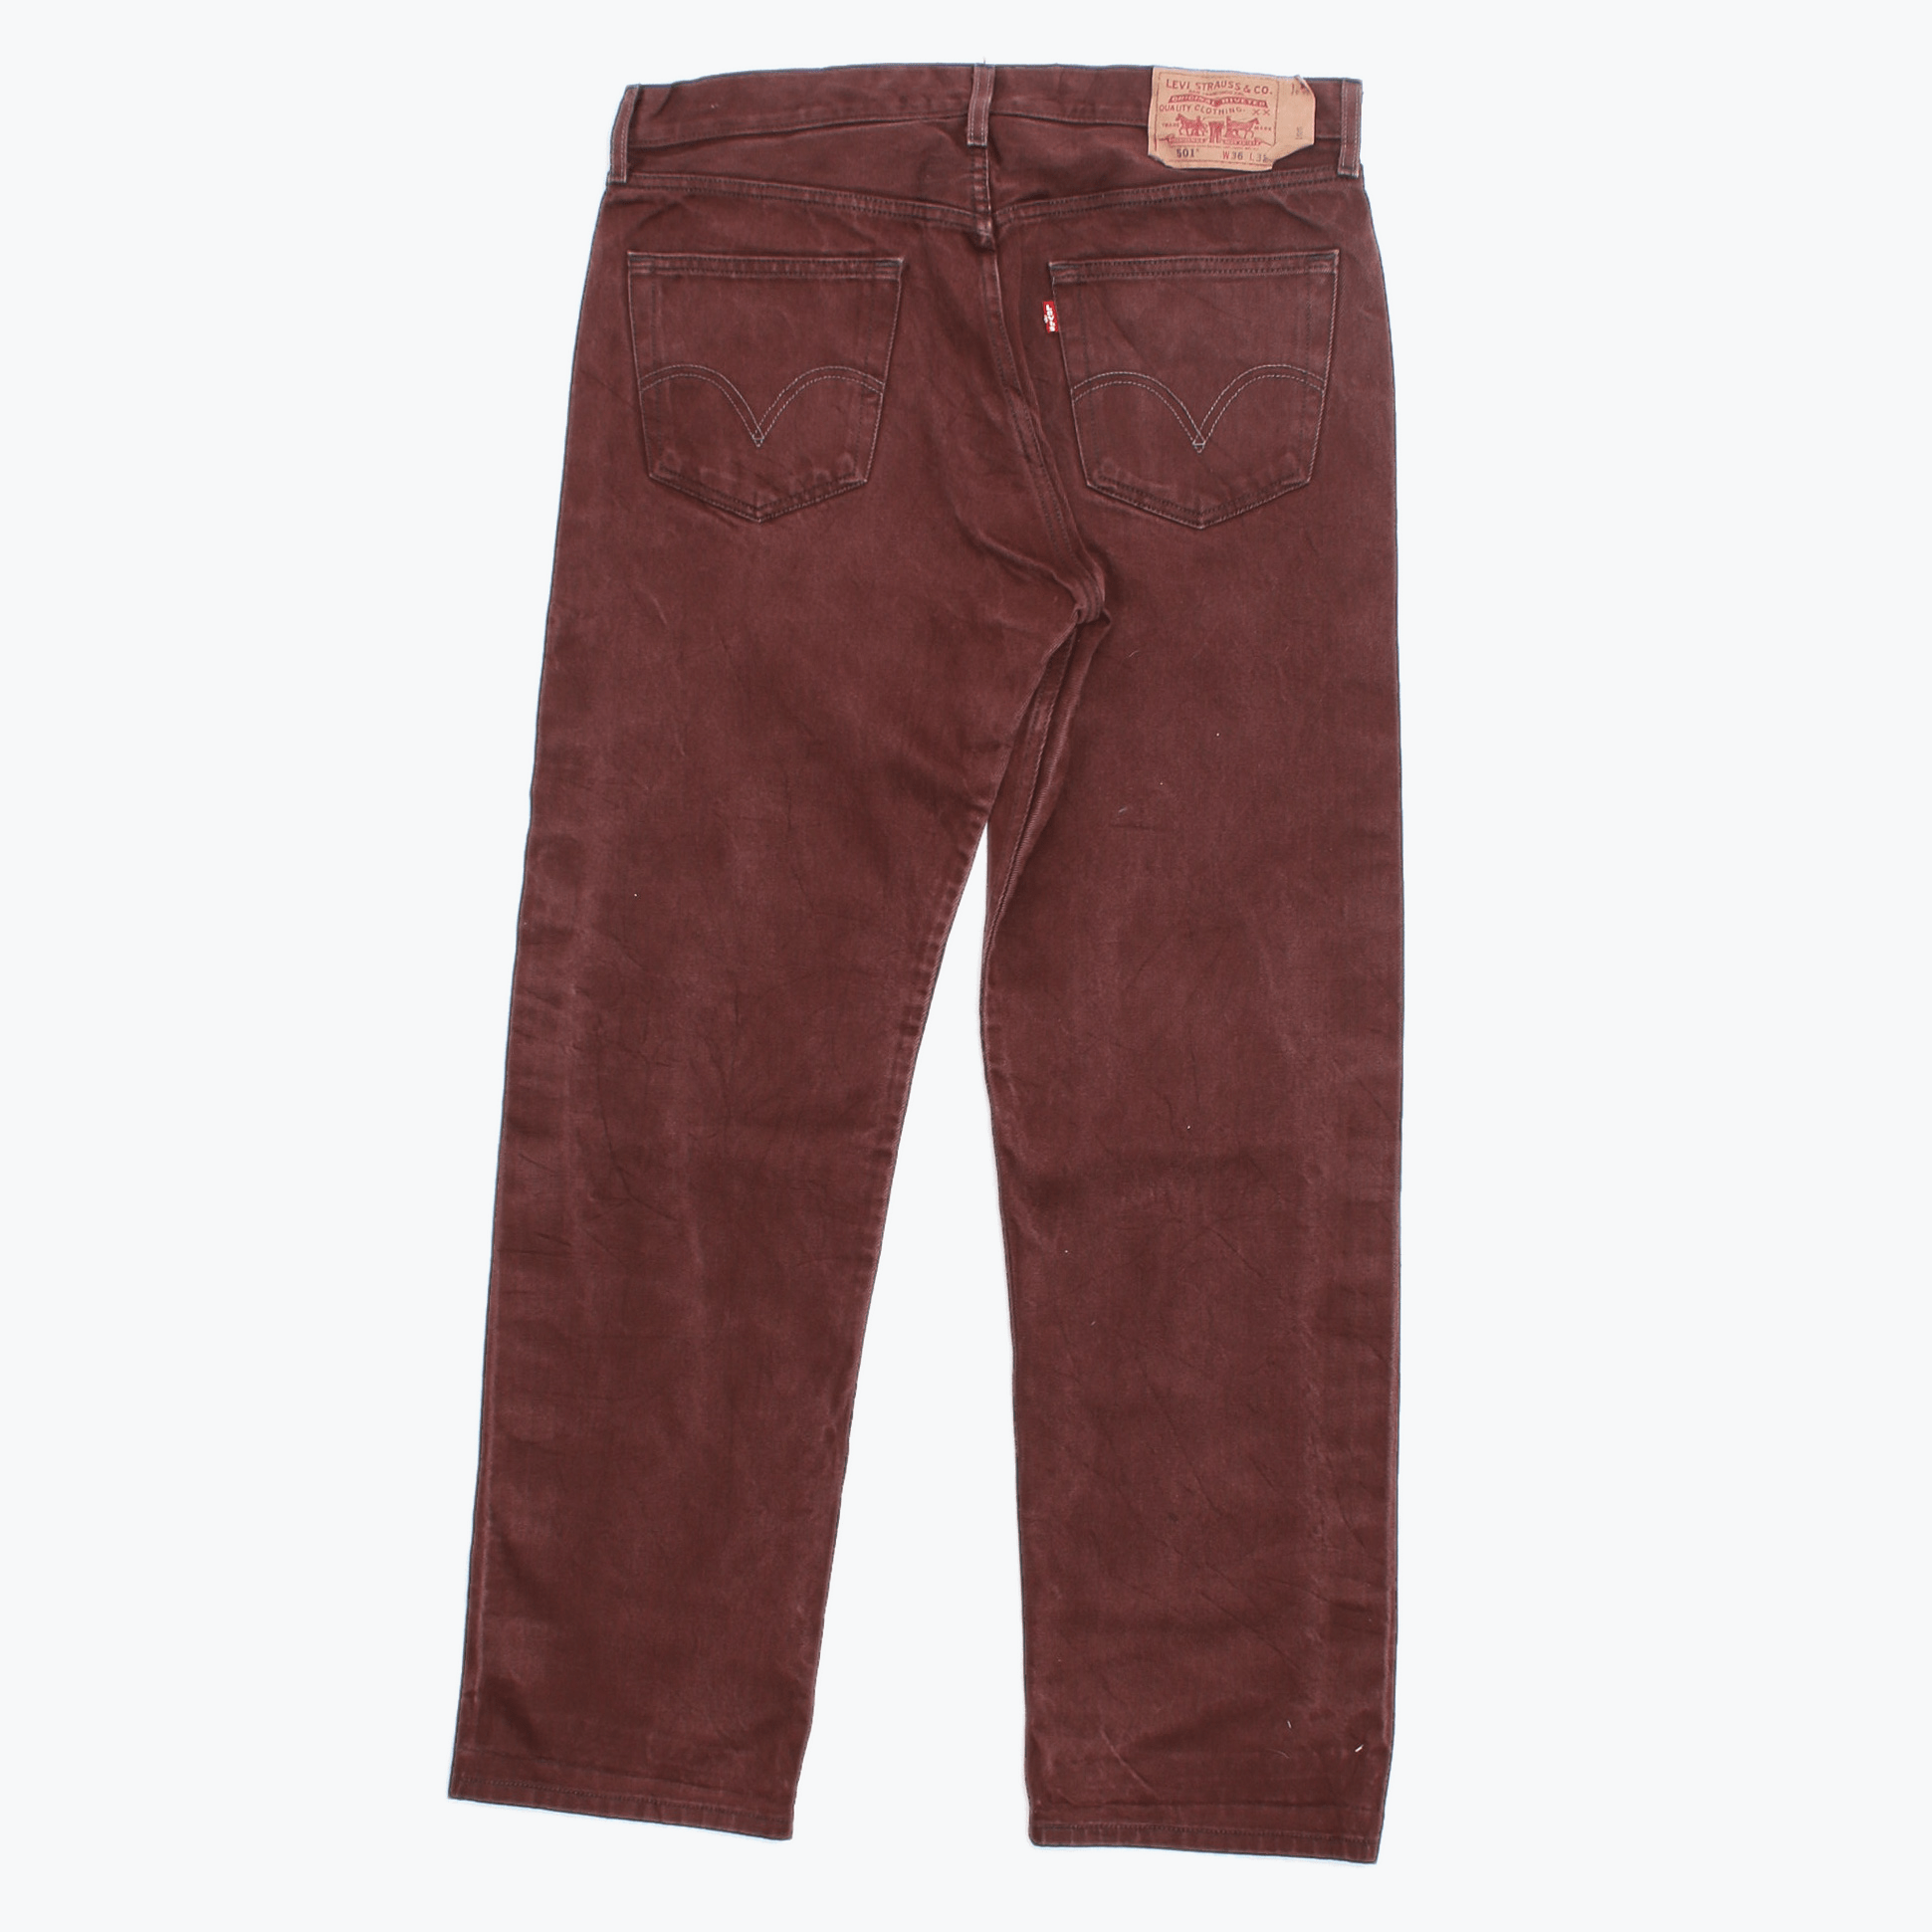 Vintage Levi's 501 Jeans - Maroon - 36